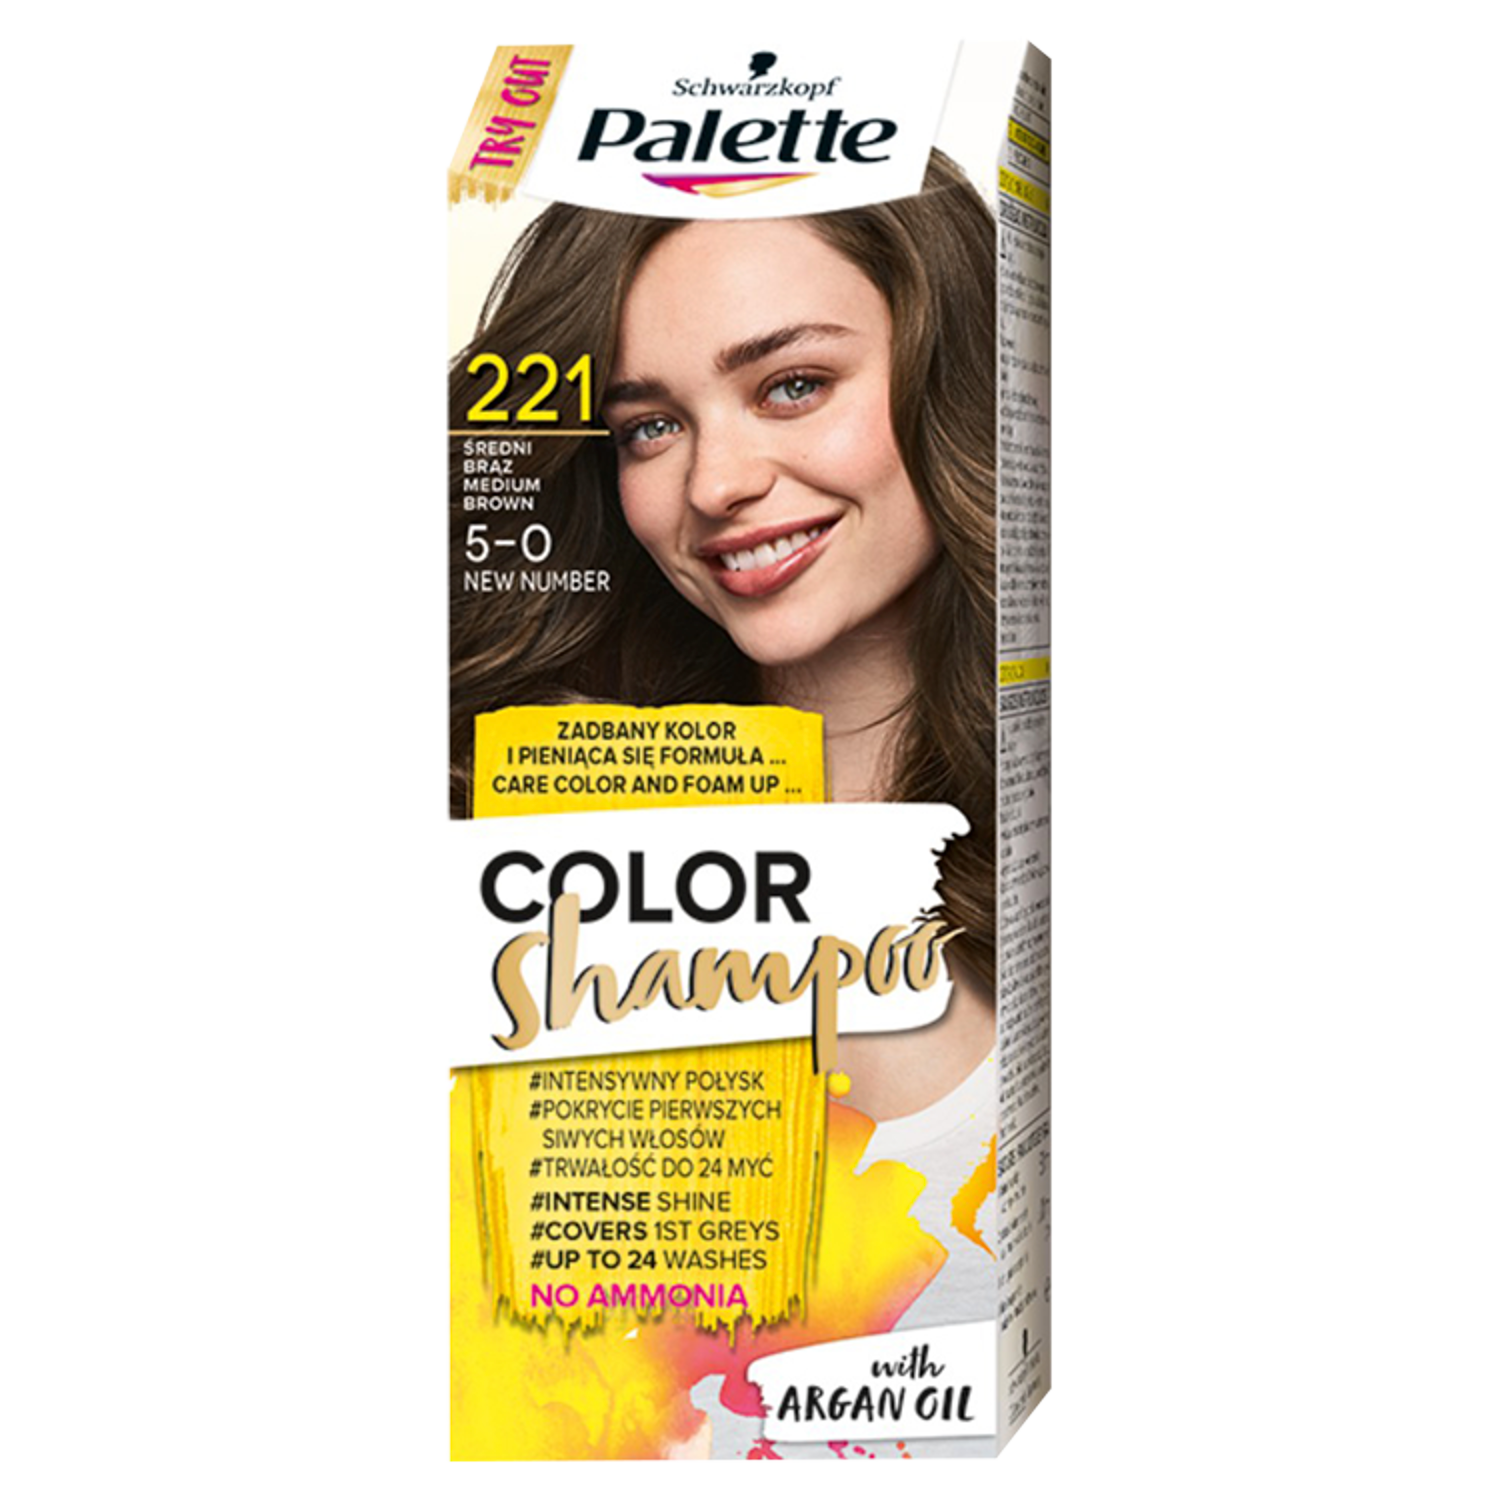 Palette Color Shampoo szampon koloryzujący do włosów 5-0 (221) średni brąz,  1 opak. | hebe.pl